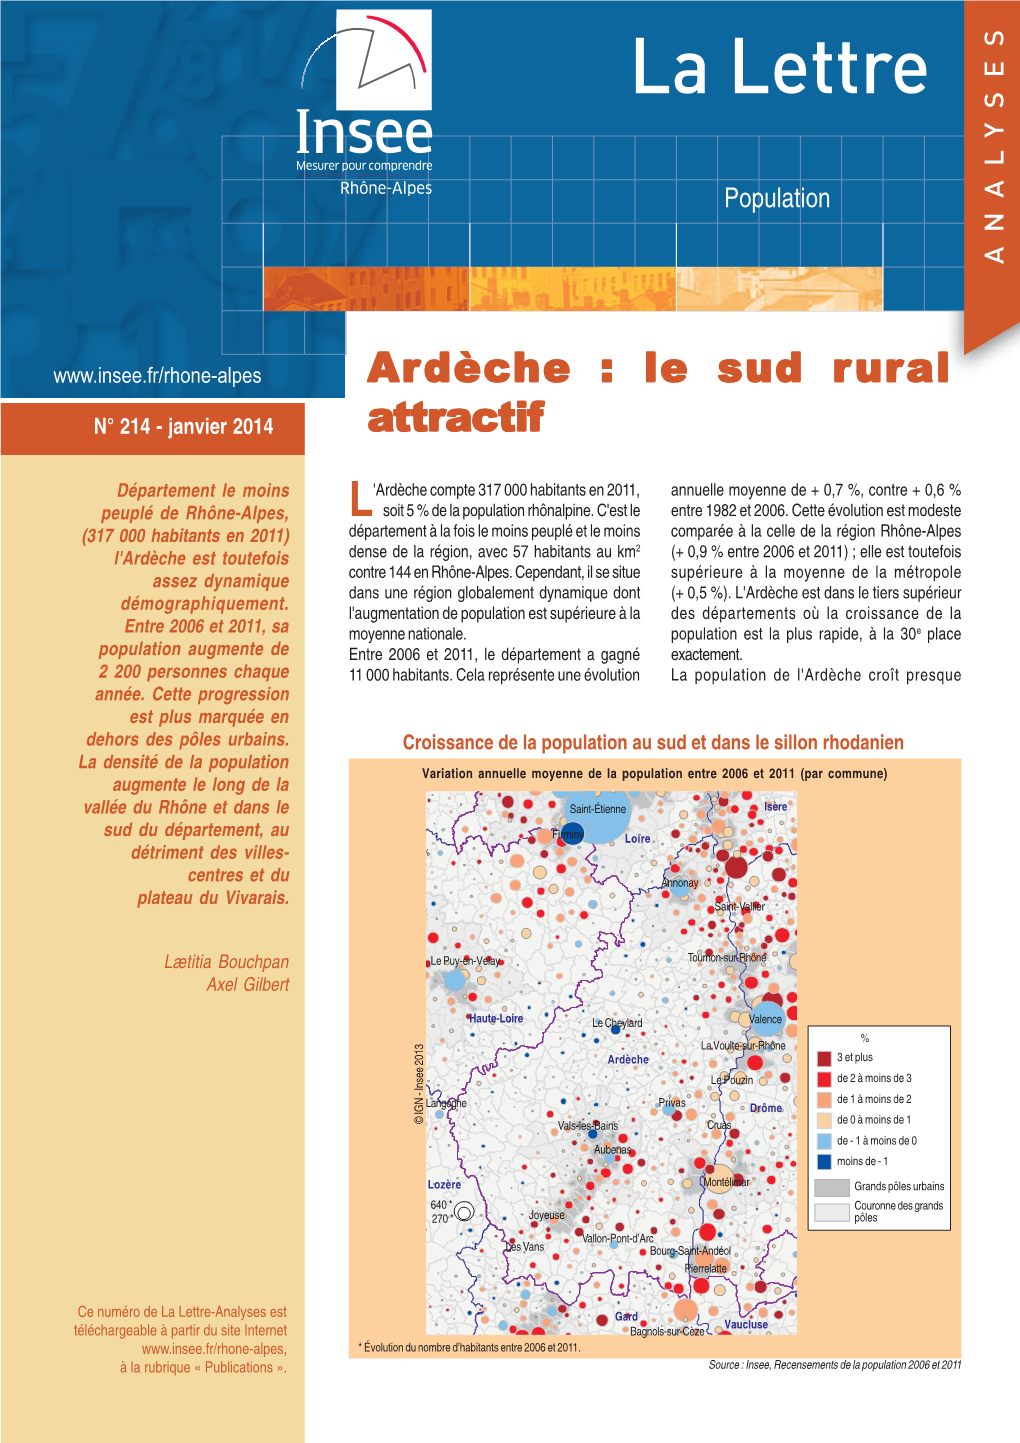 Ardèche : Le Sud Rural N° 214 - Janvier 2014 Attractif